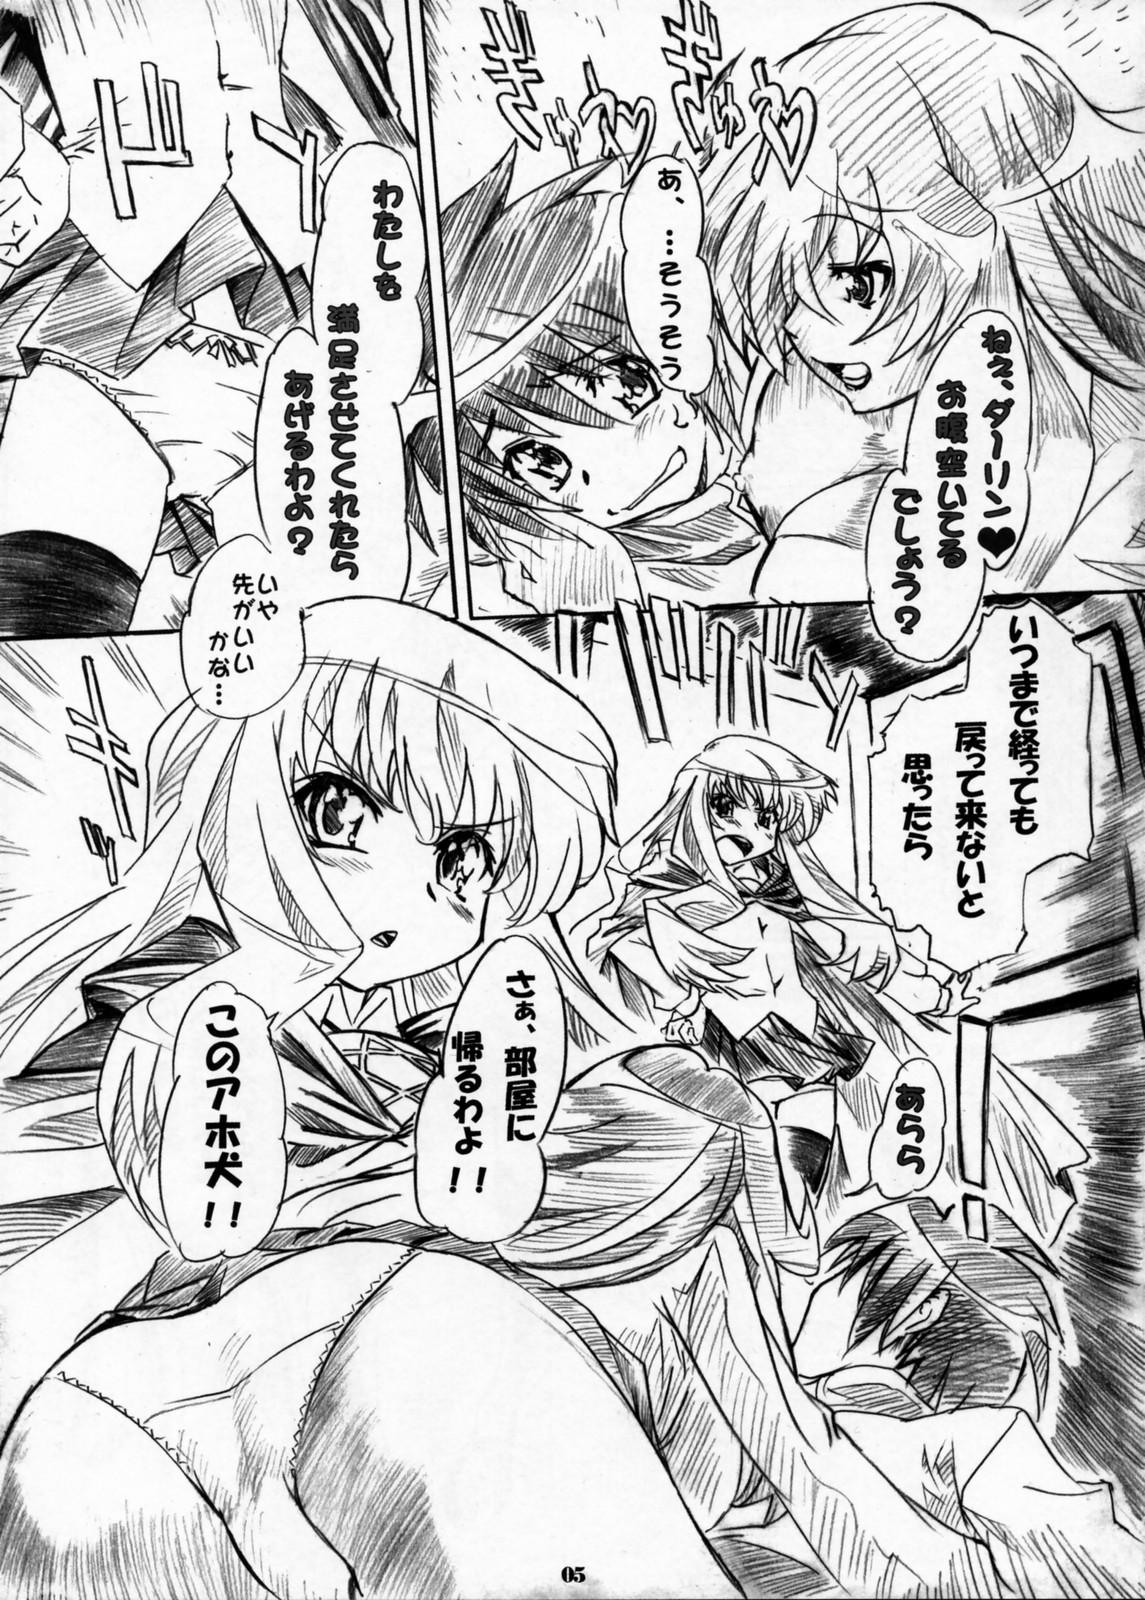 Assfingering Kizoku Gokuraku - Zero no tsukaima Soapy Massage - Page 4